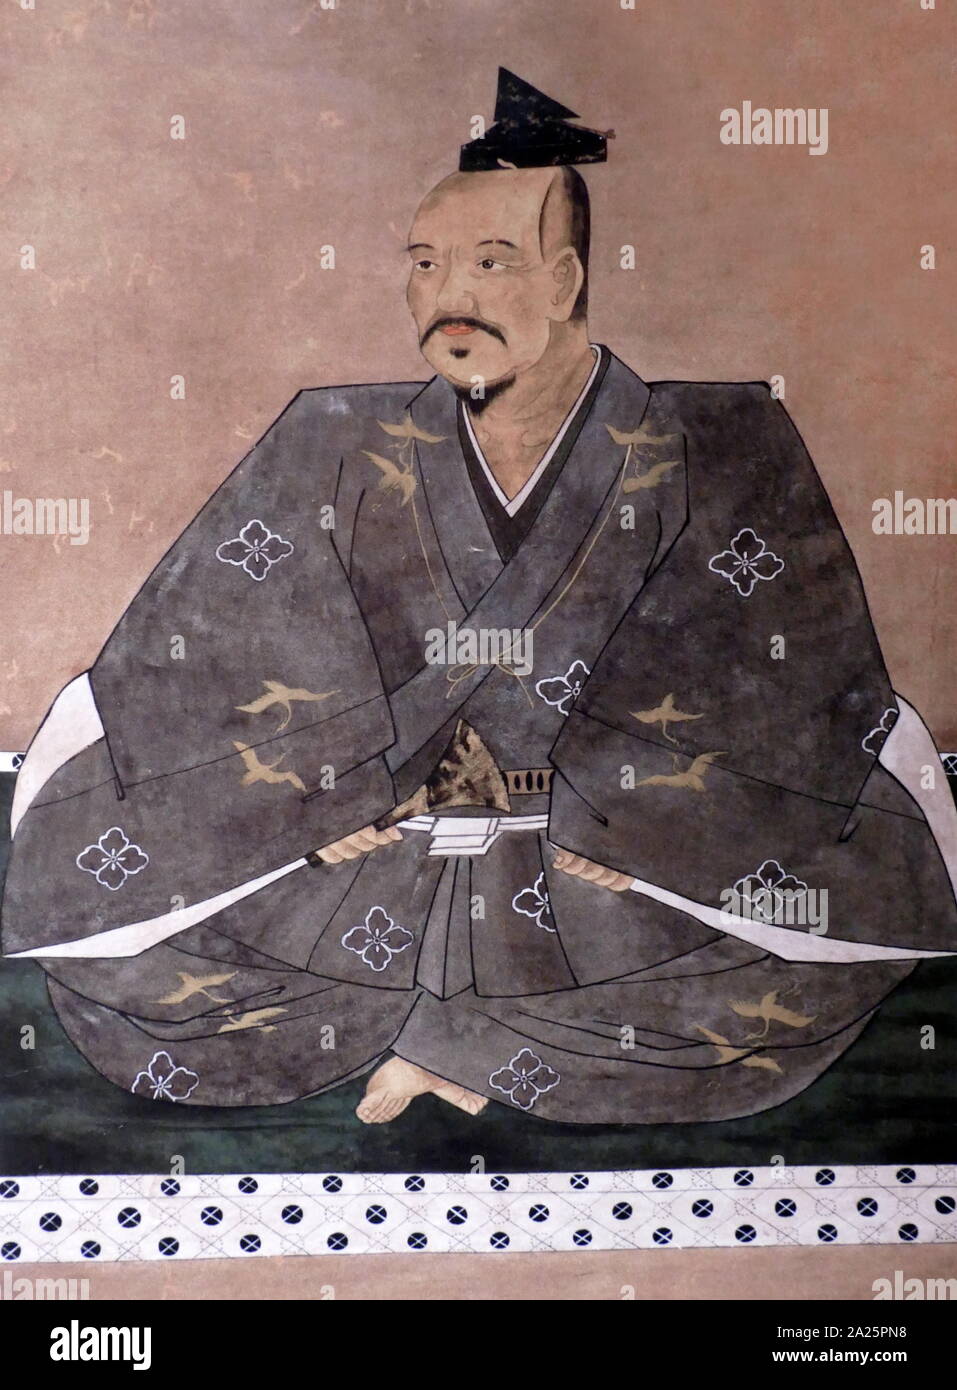 Takeda Shingen (1521 - 1573), eine herausragende Daimyo (Lord), im feudalen Japan mit außergewöhnlichen militärischen Prestige in der späten Phase der Sengoku-zeit. Stockfoto